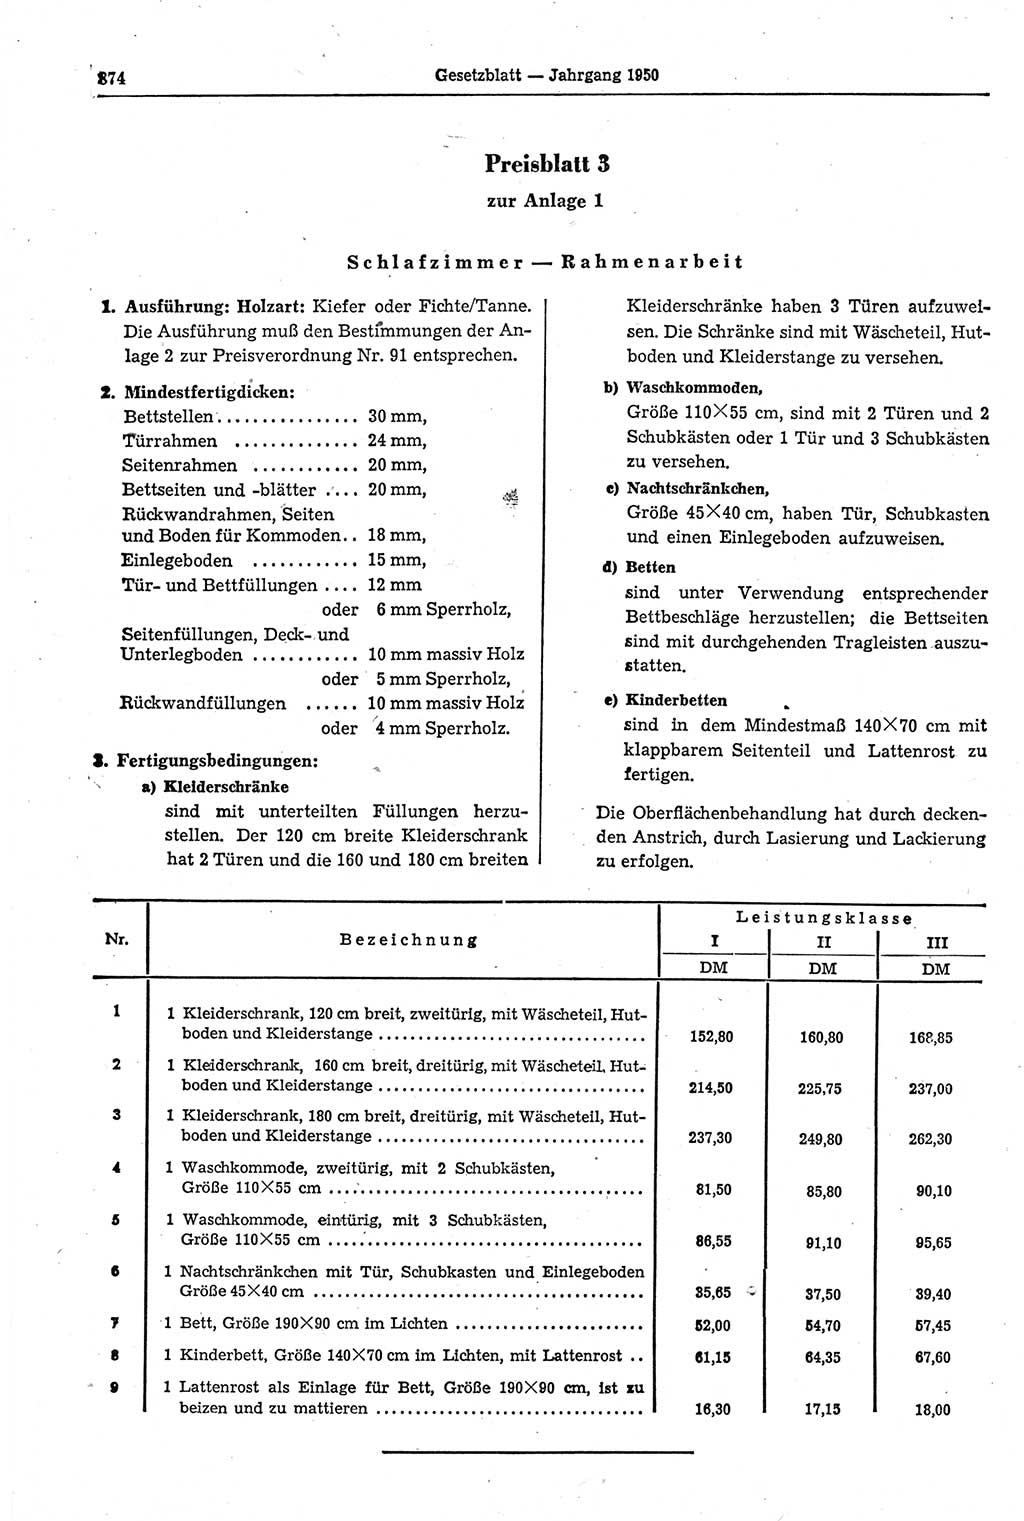 Gesetzblatt (GBl.) der Deutschen Demokratischen Republik (DDR) 1950, Seite 874 (GBl. DDR 1950, S. 874)